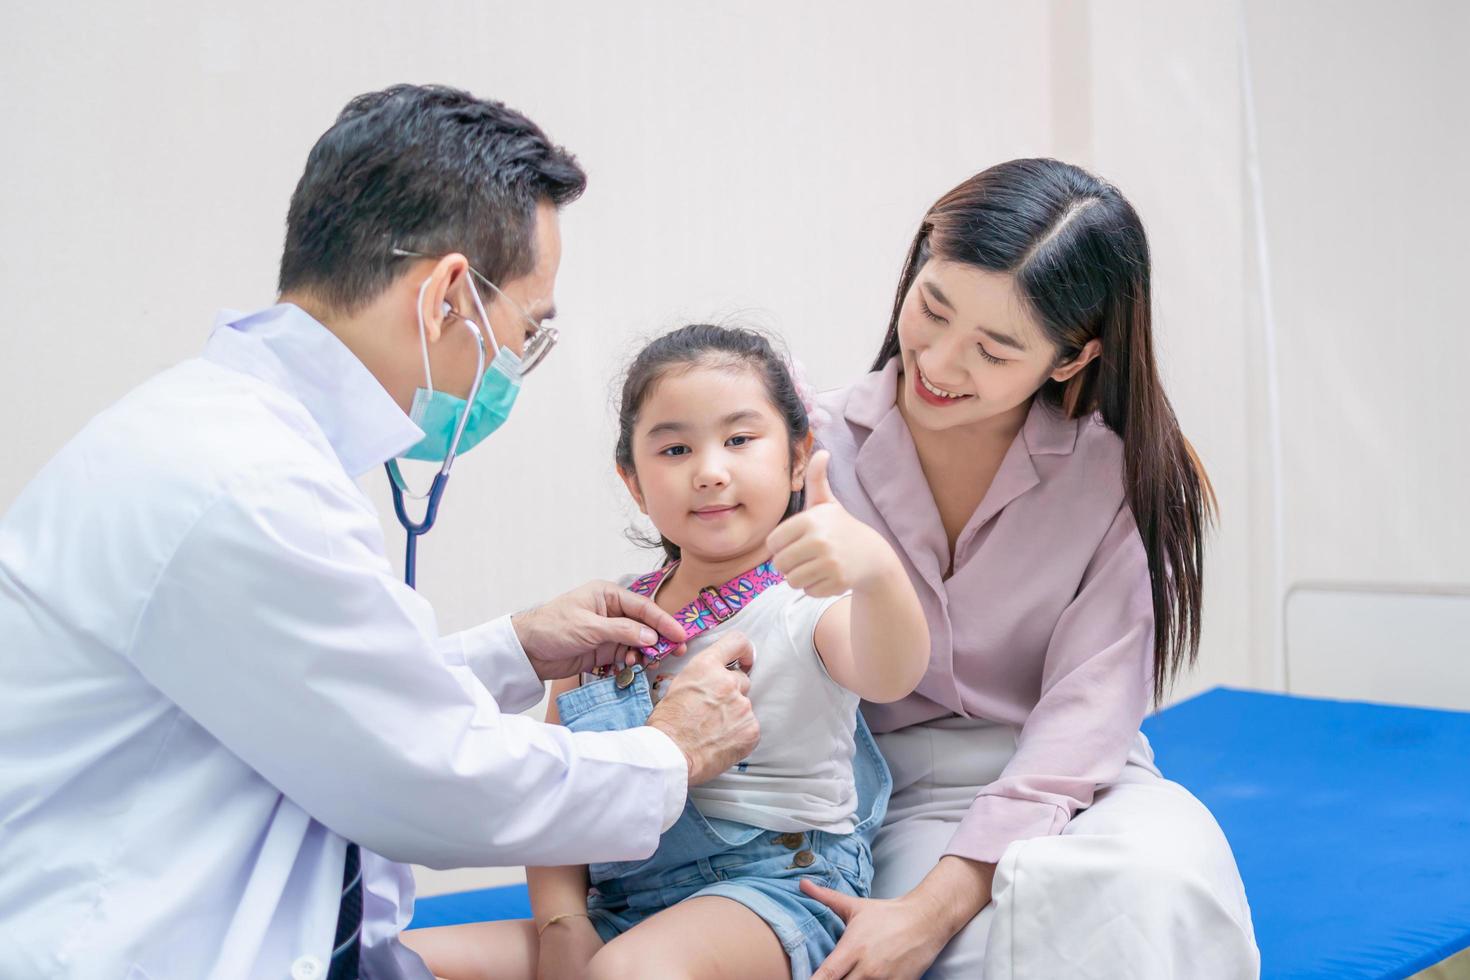 enfant fille patiente visite médecin avec sa mère, médecin pédiatre examinant un petit patient à l'aide d'un stéthoscope photo